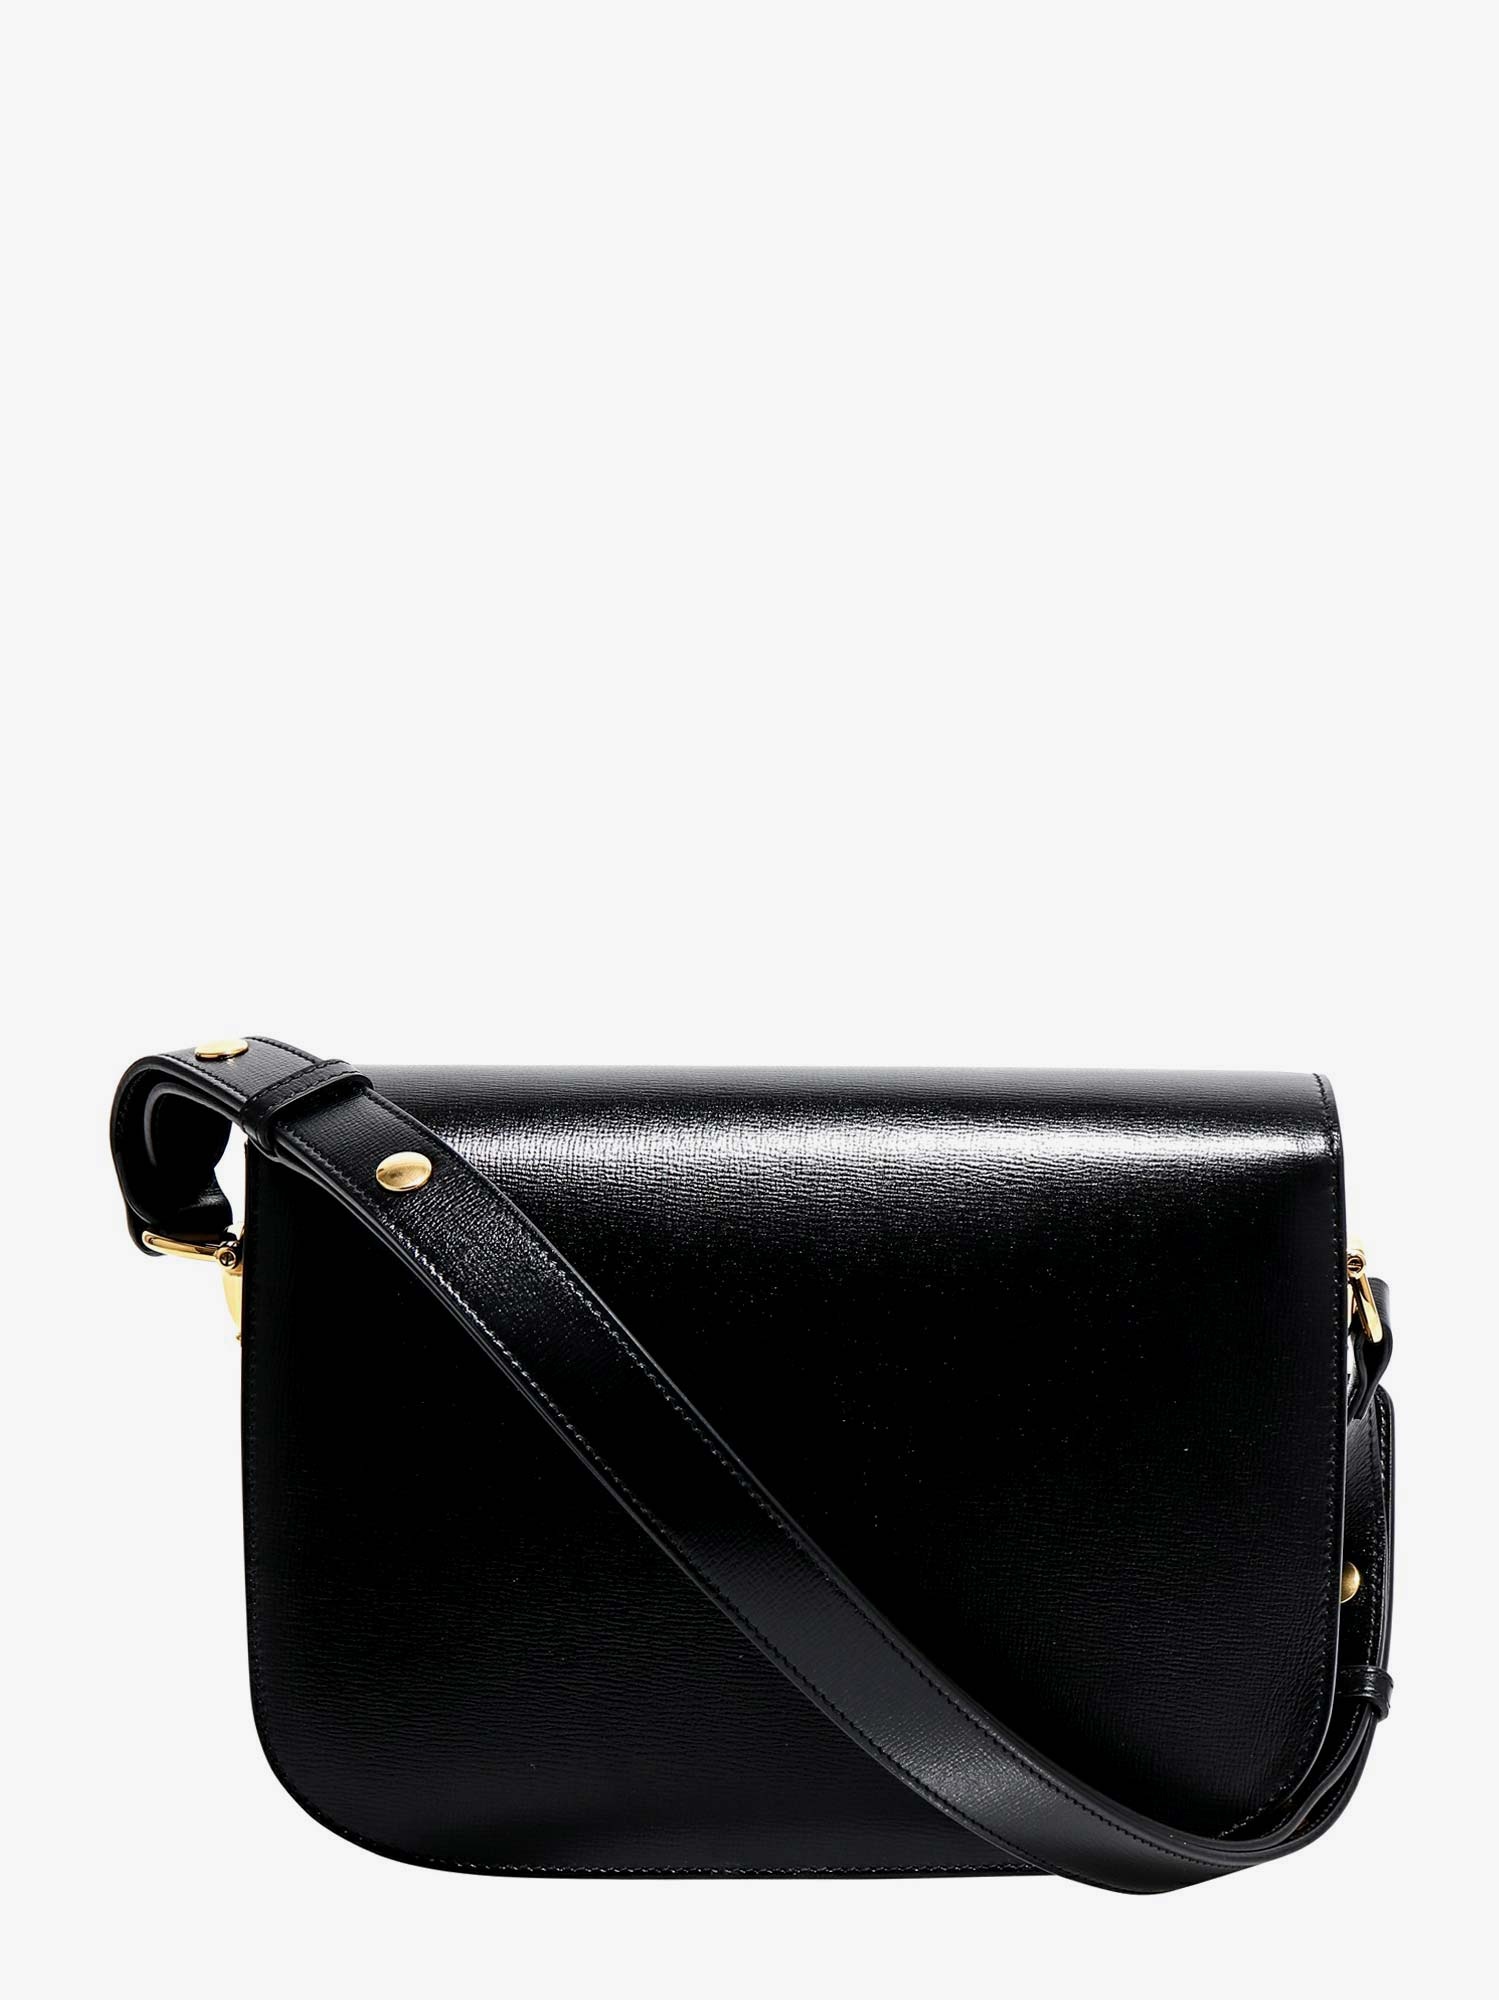 Gucci Woman Horsebit 1955 Woman Black Shoulder Bags - 2